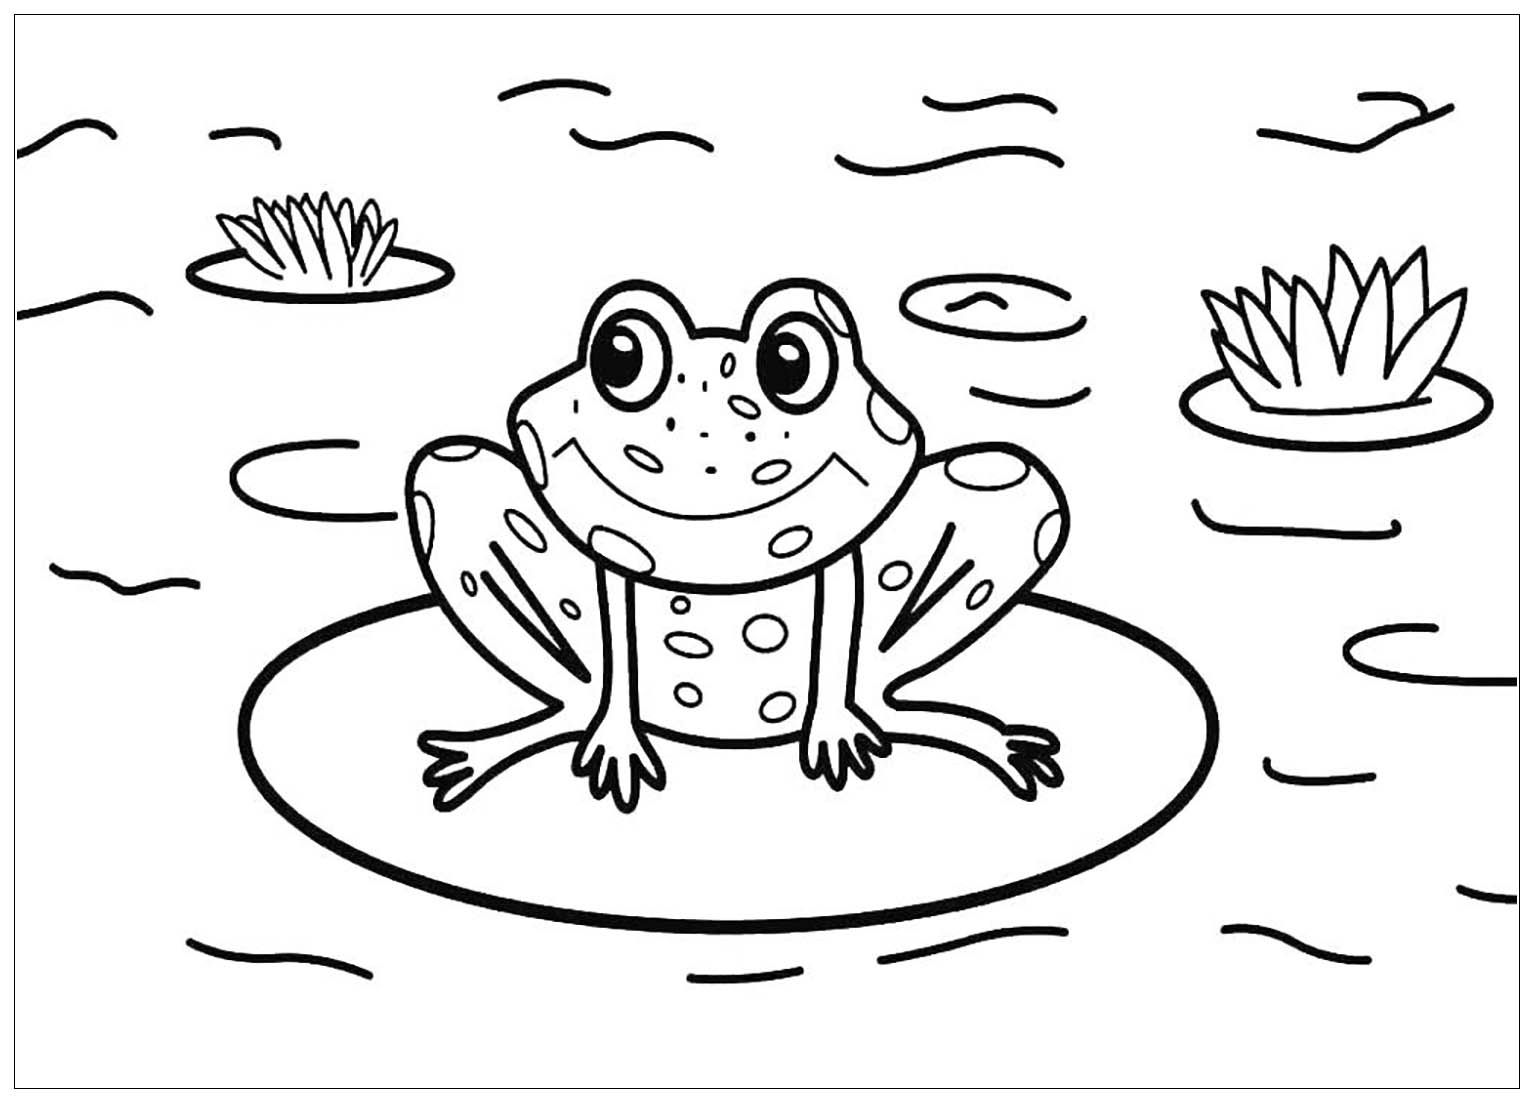 Tranh tô màu con vật sống dưới nước - Chú ếch trong ao